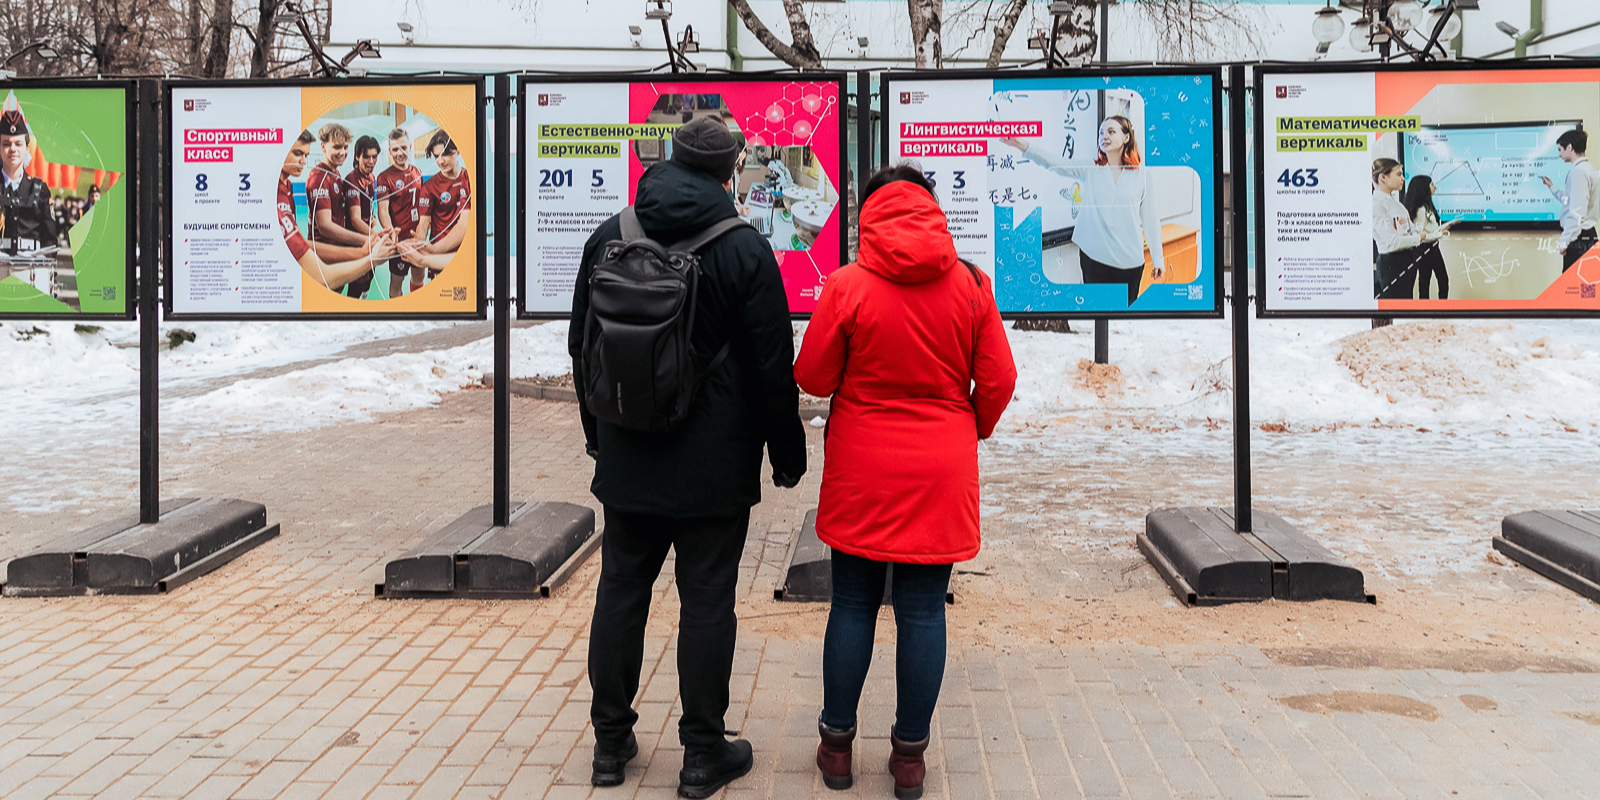 На стендах изображены фоторепортажи с информацией о всевозможных образовательных вертикалях. Фото: сайт мэра Москвы